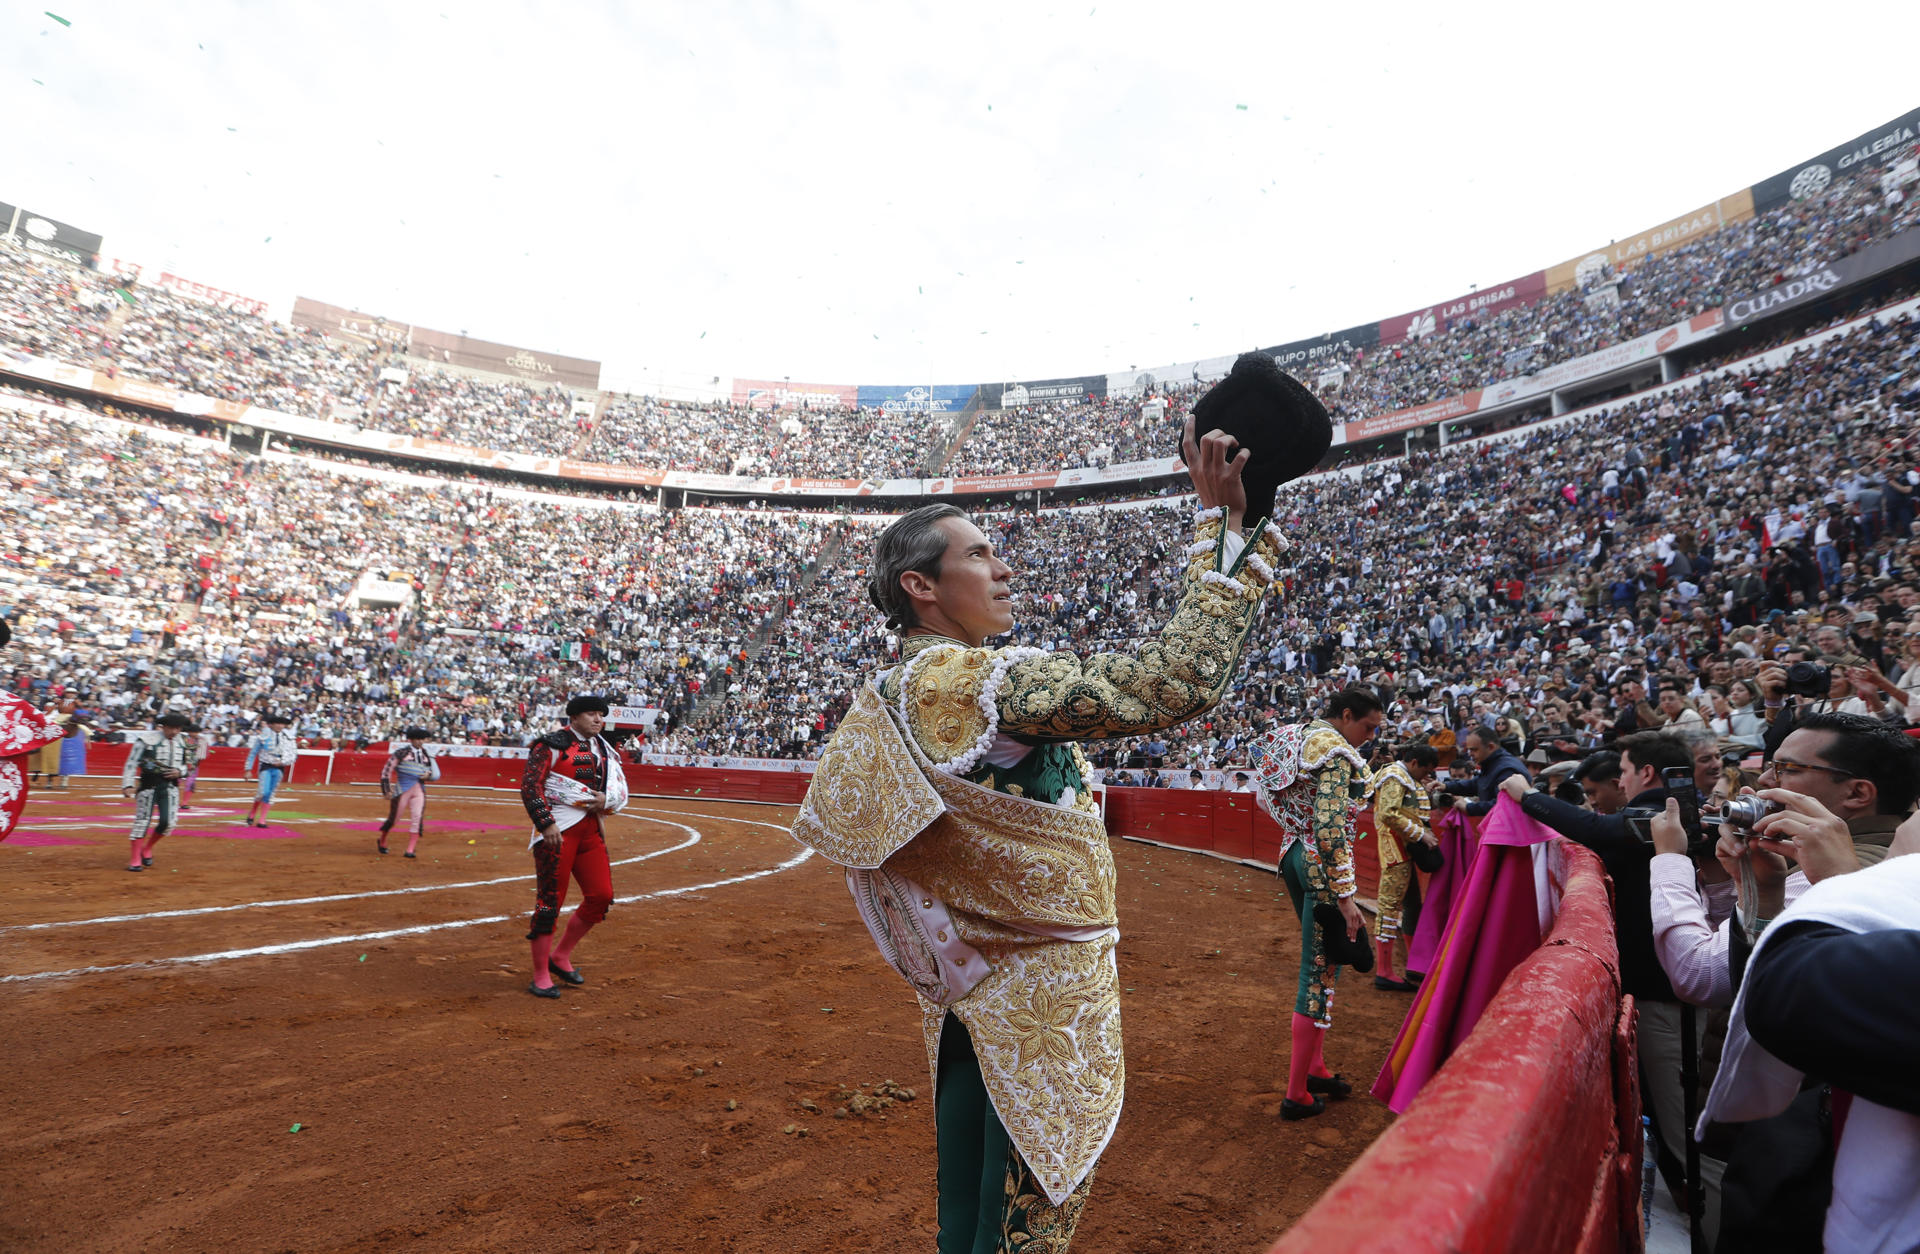 El torero mexicano Diego Silveti saluda durante una corrida en Ciudad de México (México). EFE/ Mario Guzmán